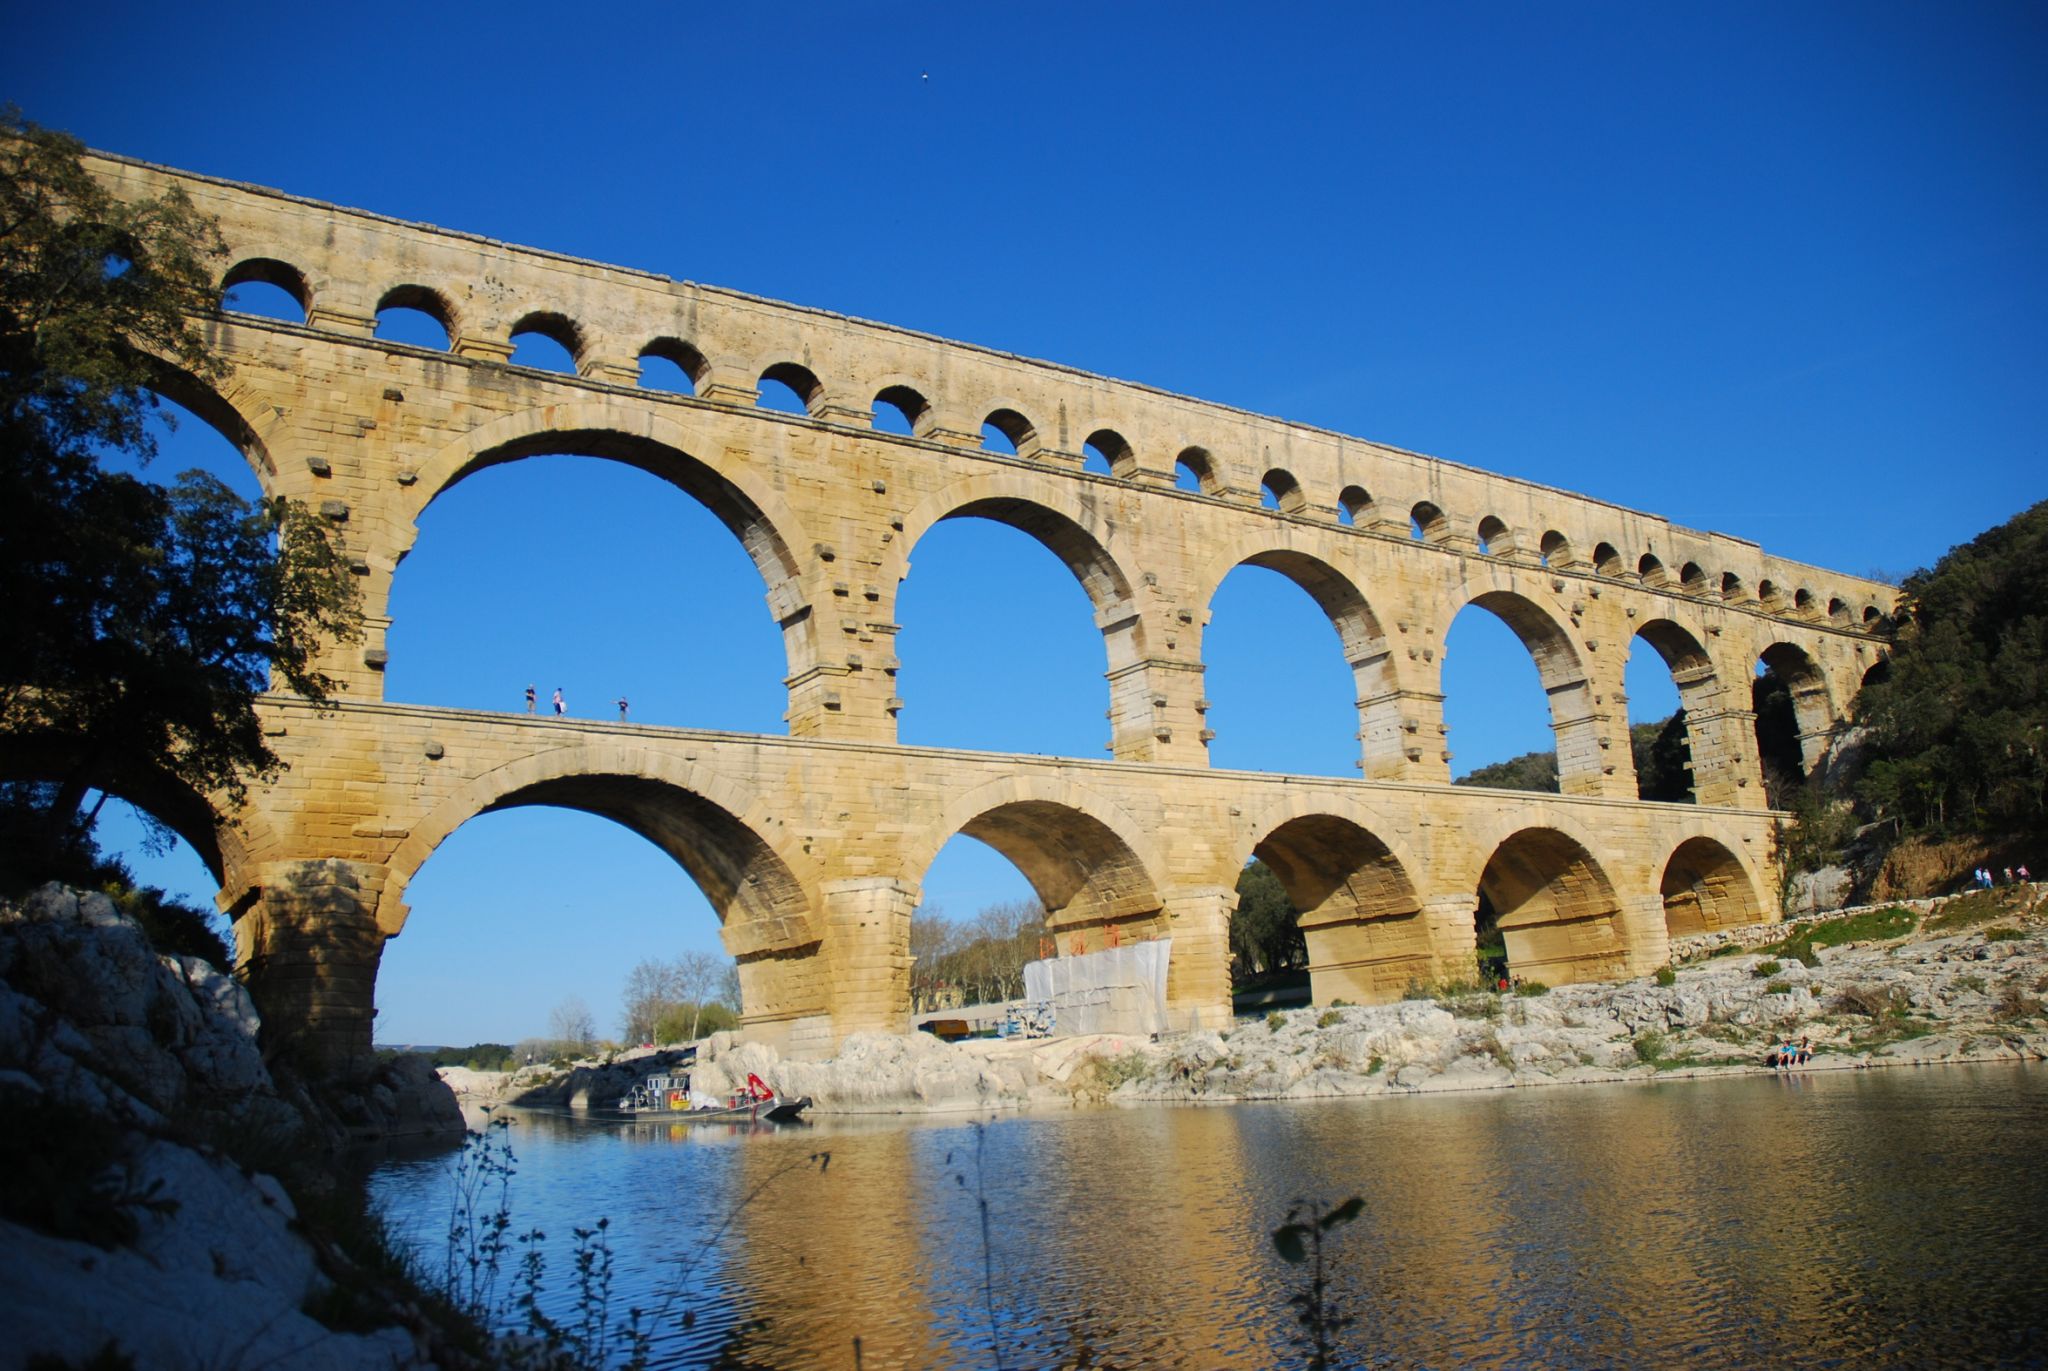 le pont du Gard, aqueduc romain traversant le Gard, datant du Ier siècle après J.-C. (près de Nîmes, France)